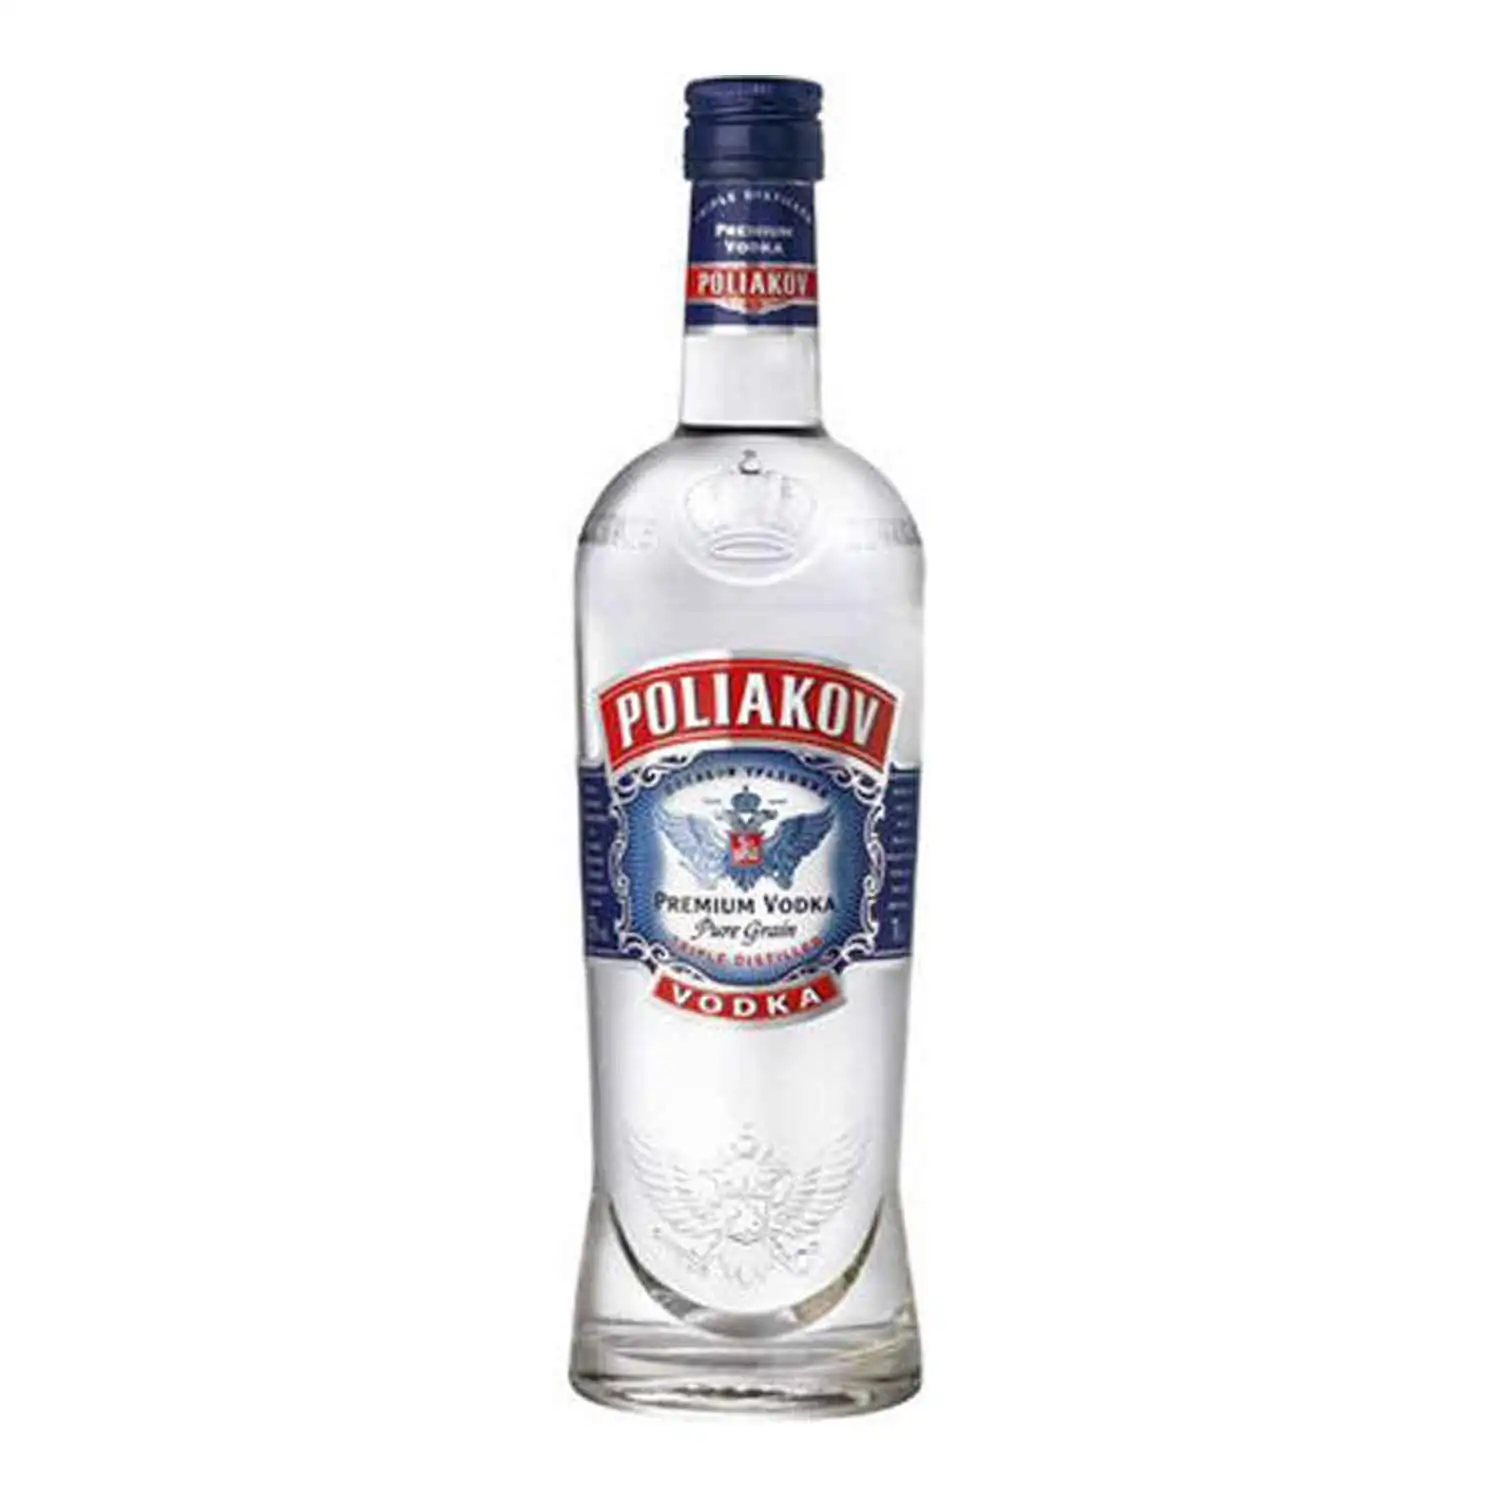 Poliakov vodka 70cl Alc 37,5% - Buy at Real Tobacco